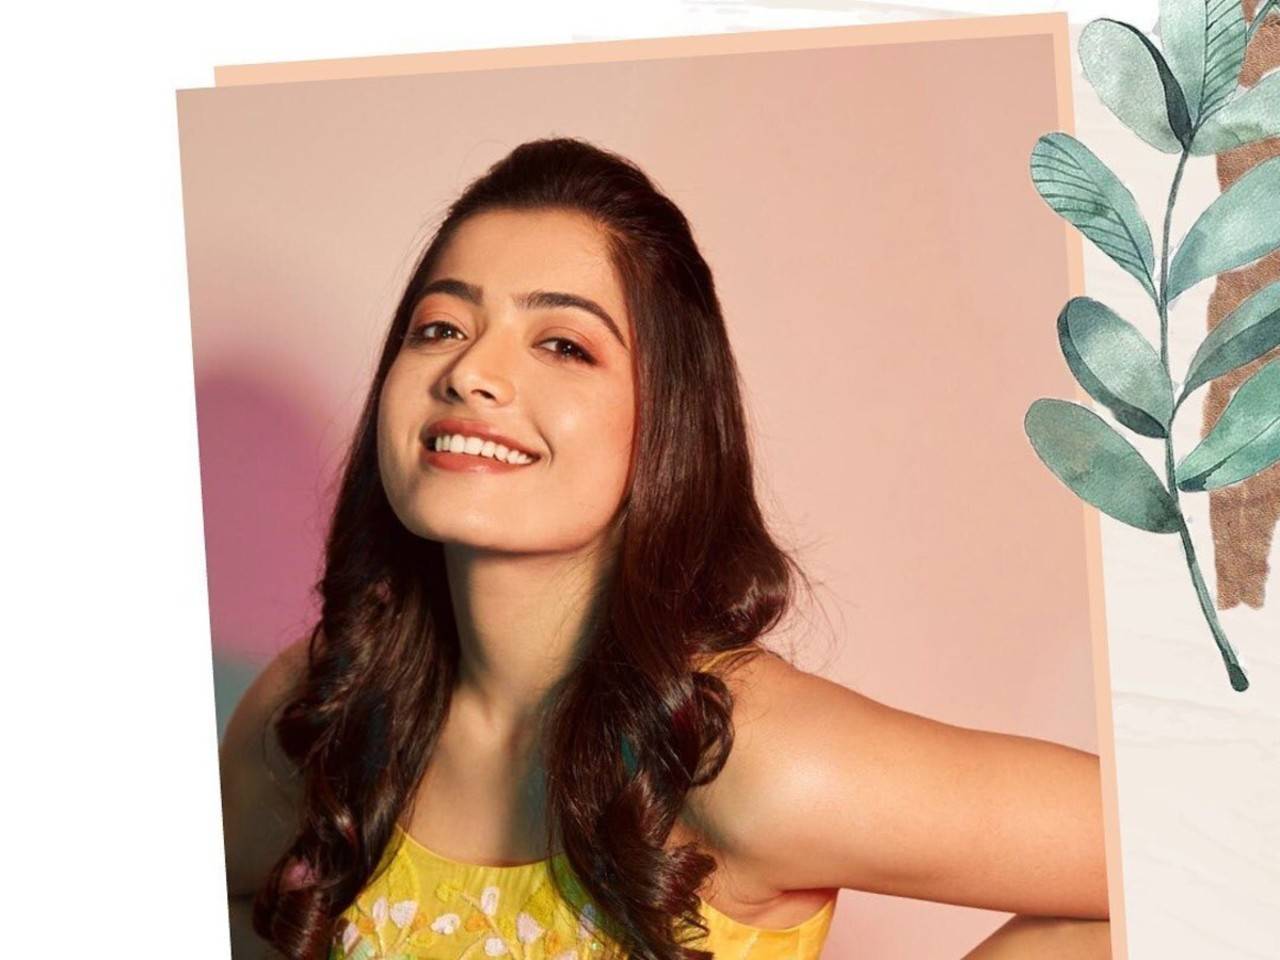 മുഖത്തെ രോമ വളർച്ച പൂർണമായും മാറ്റാം | Laser Hair Removal Malayalam |  Beauty Tips - YouTube